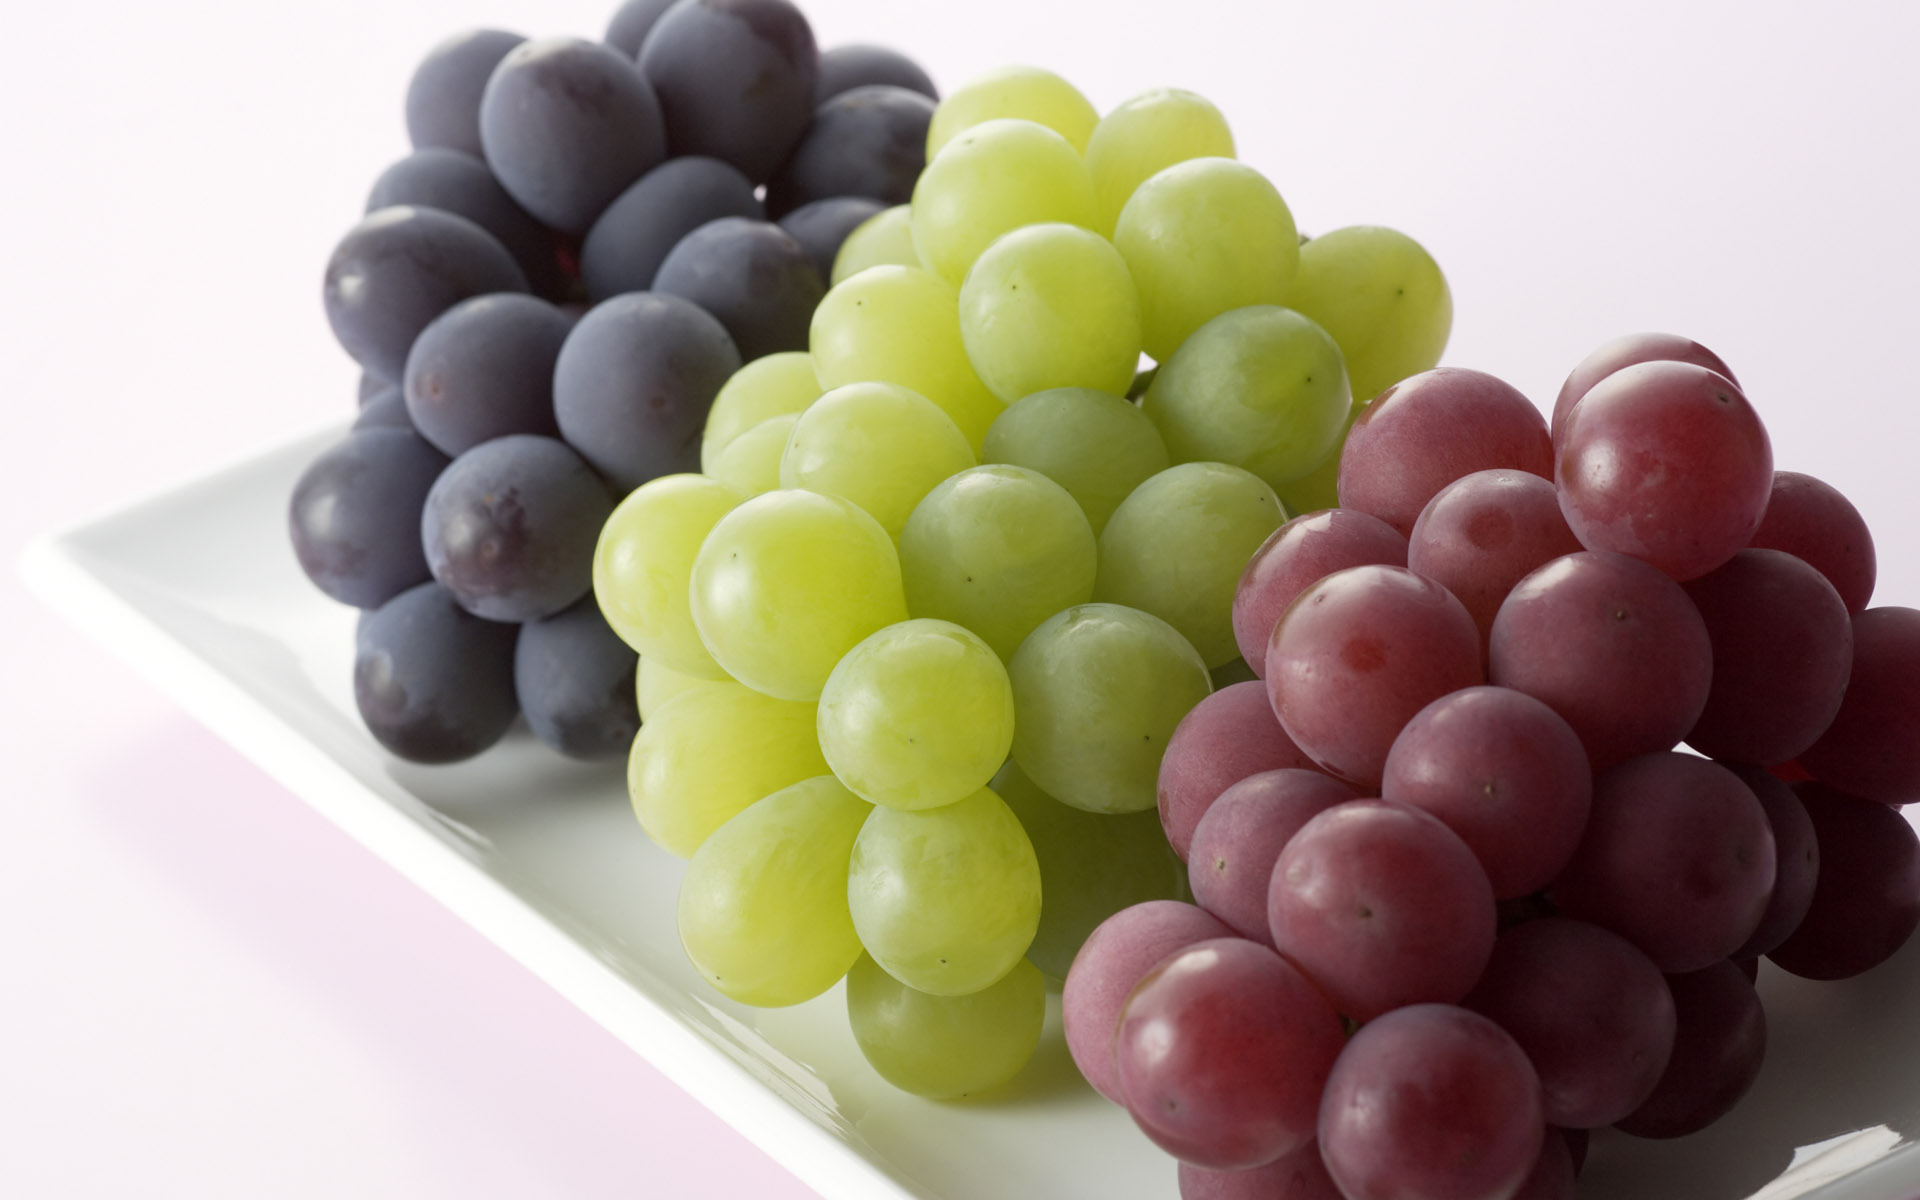 grapes pics fruit download